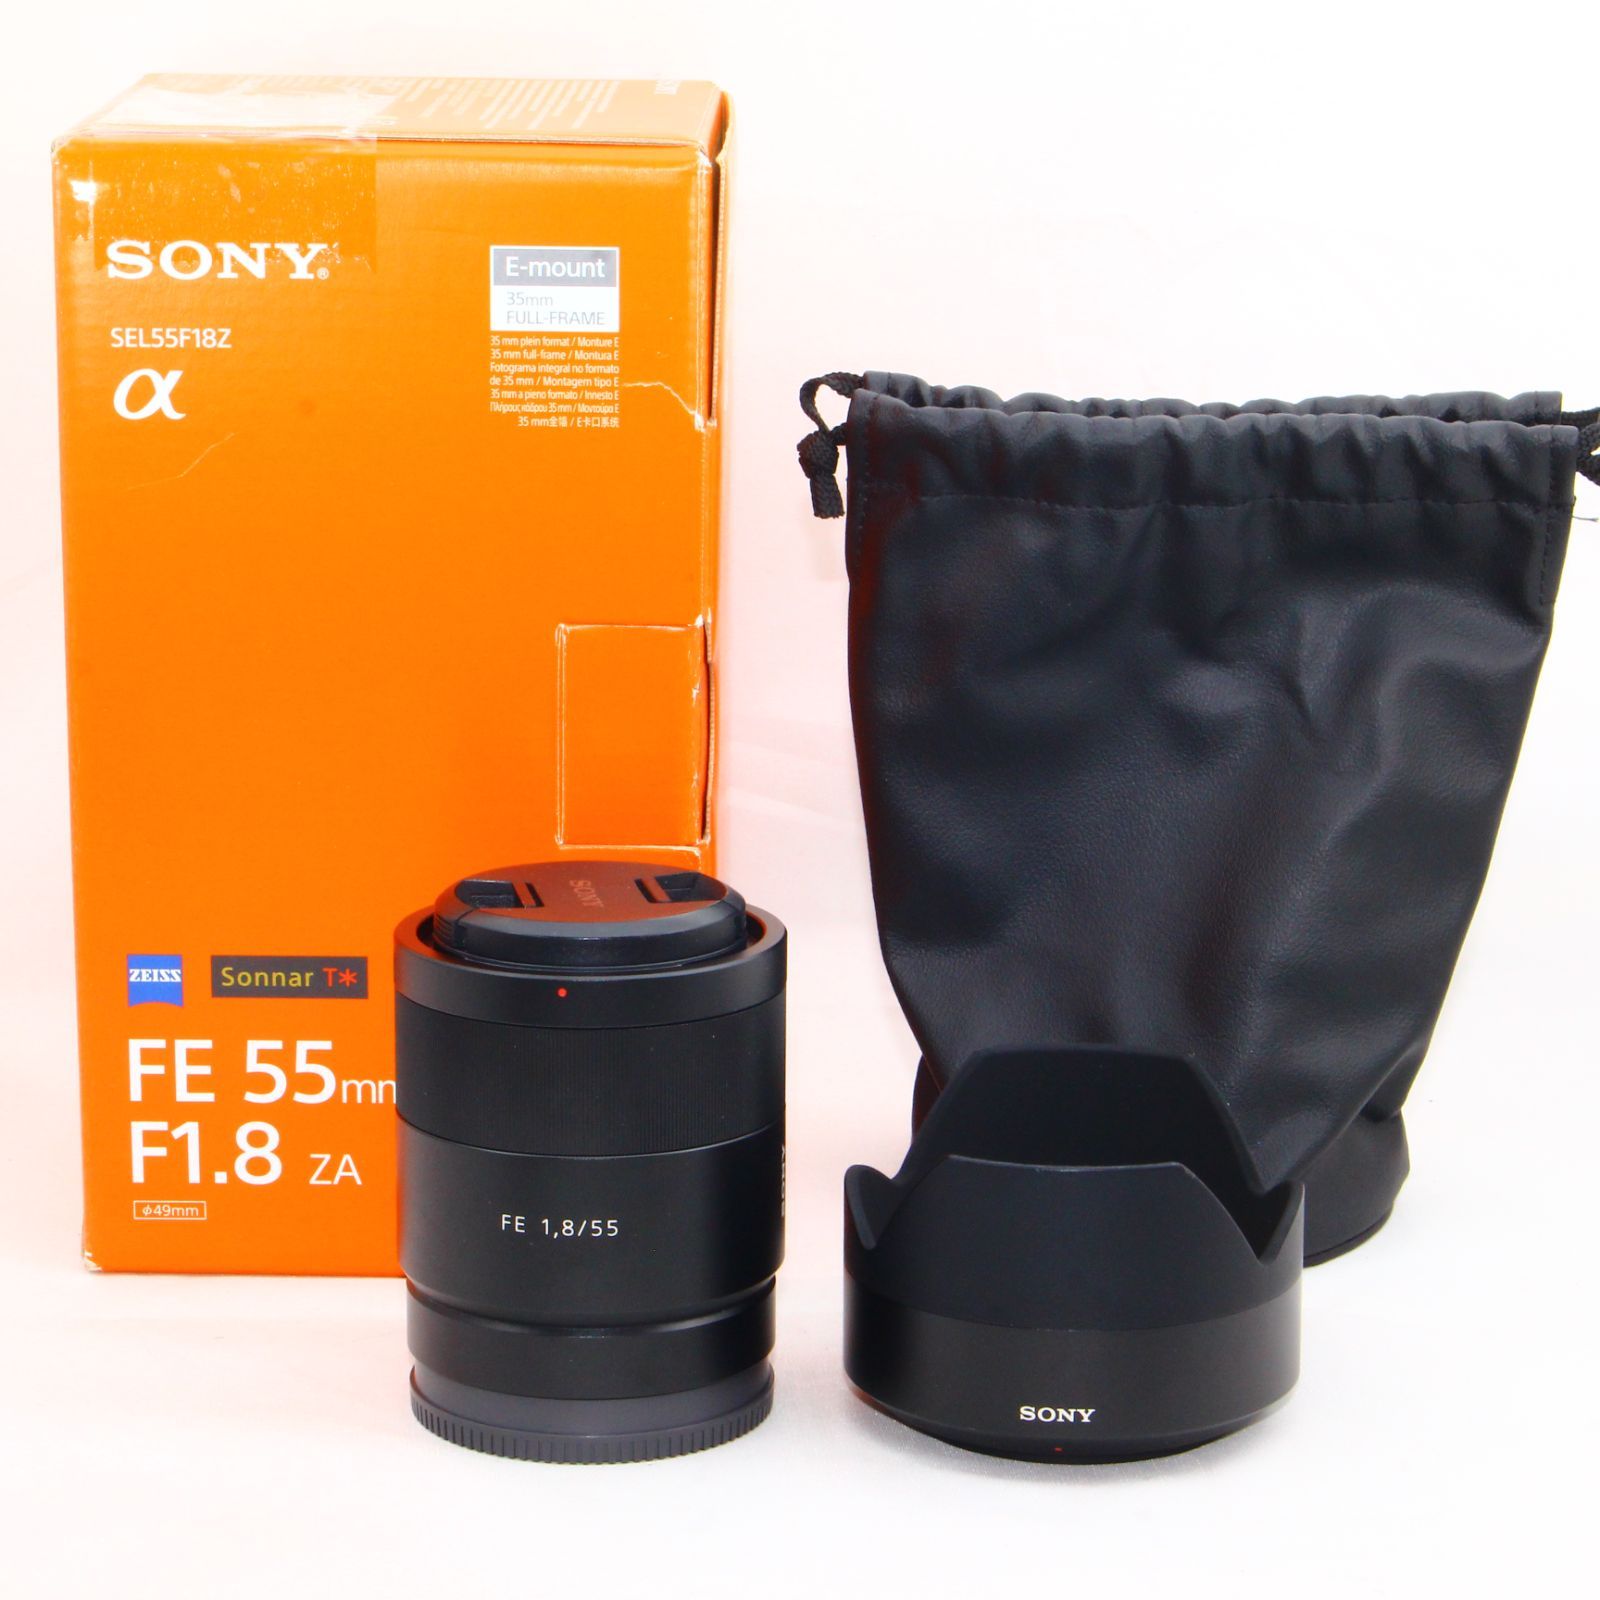 ソニー 標準単焦点レンズ Sonnar T* FE 55mm F1.8 ZA ツァイスレンズ SEL55F18Z 